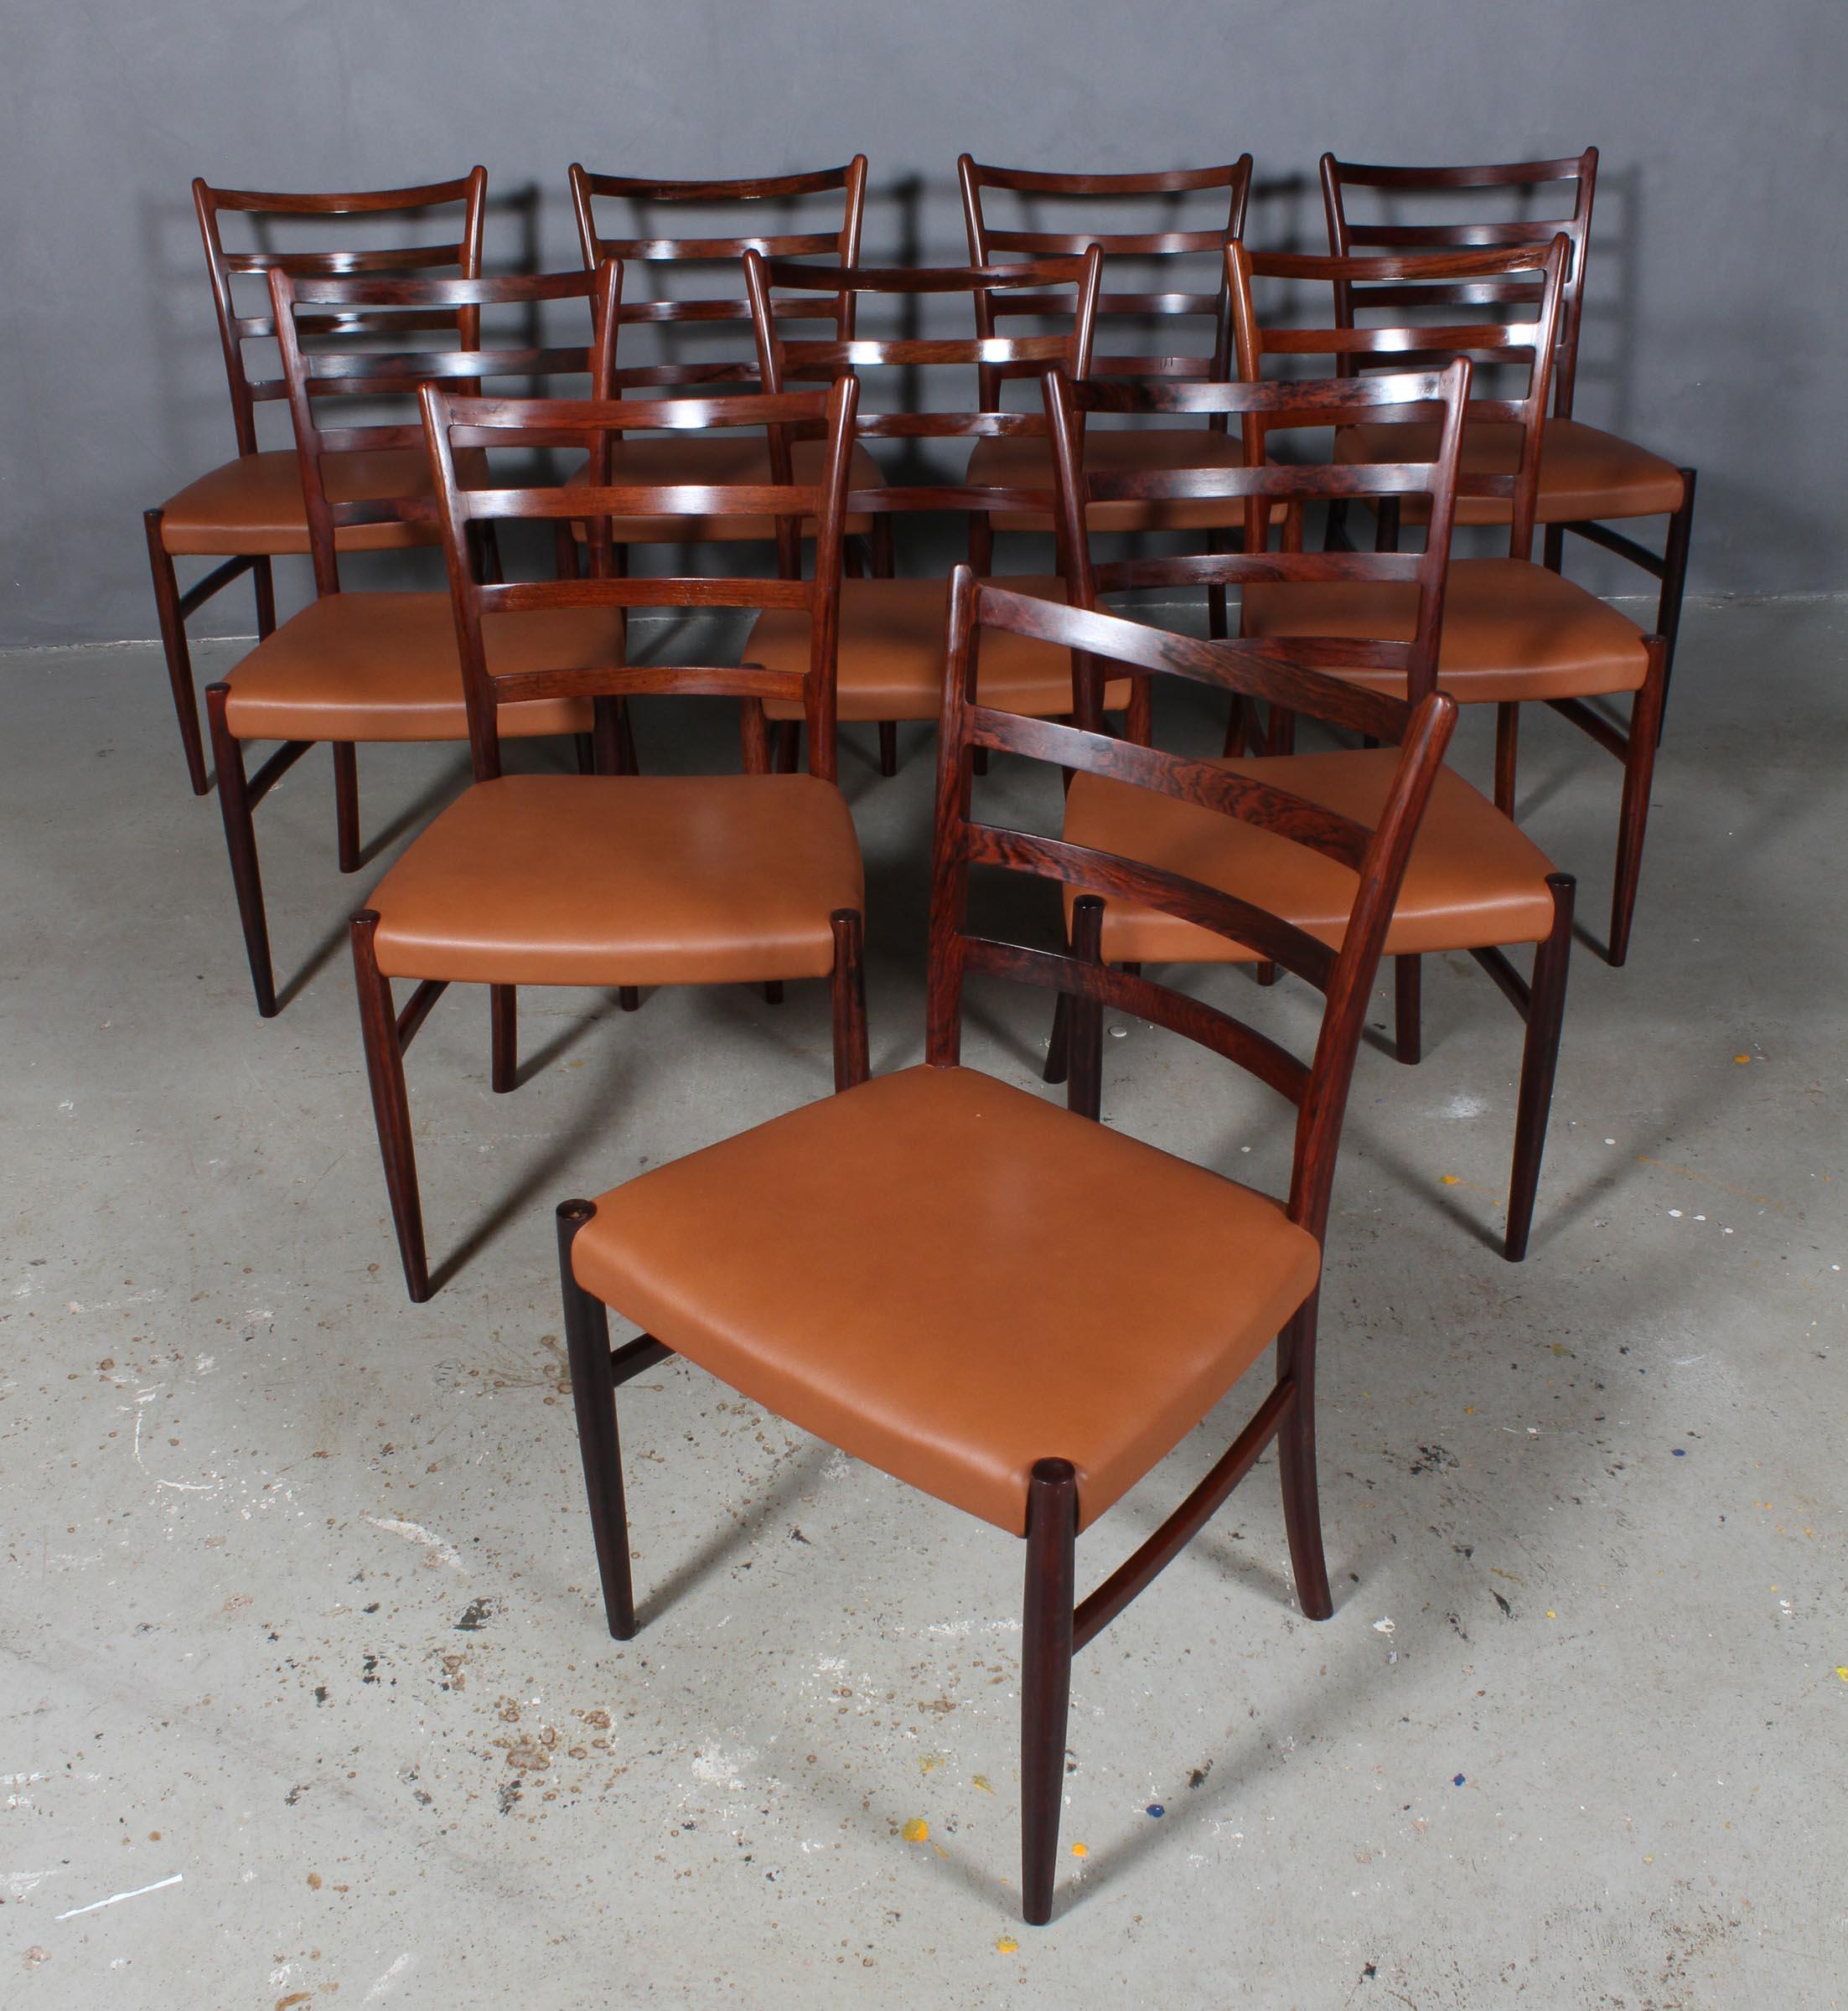 Skovby Møbelfabrik Satz von vier Esszimmerstühlen aus teilweise massivem Palisanderholz.

Neu gepolstert mit cognacfarbenem Anilinleder.

Hergestellt in den 1960er Jahren.